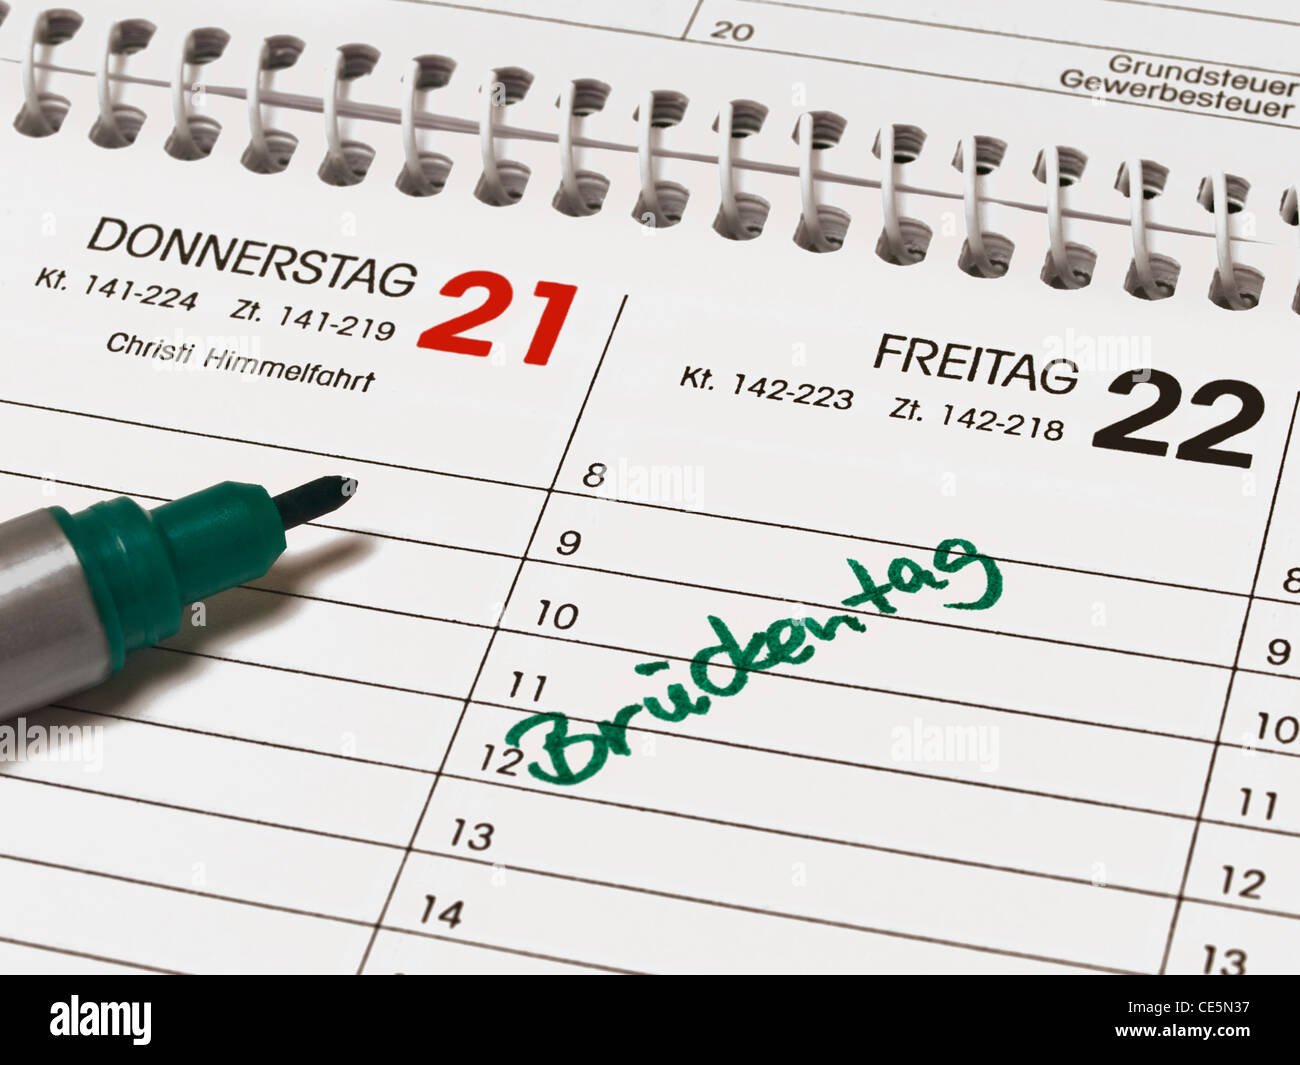 Giovedì il 21esimo giorno dell'Ascensione e venerdì il 22th. Venerdì l'elemento a ponte è il giorno nel calendario scritto in tedesco. Foto Stock